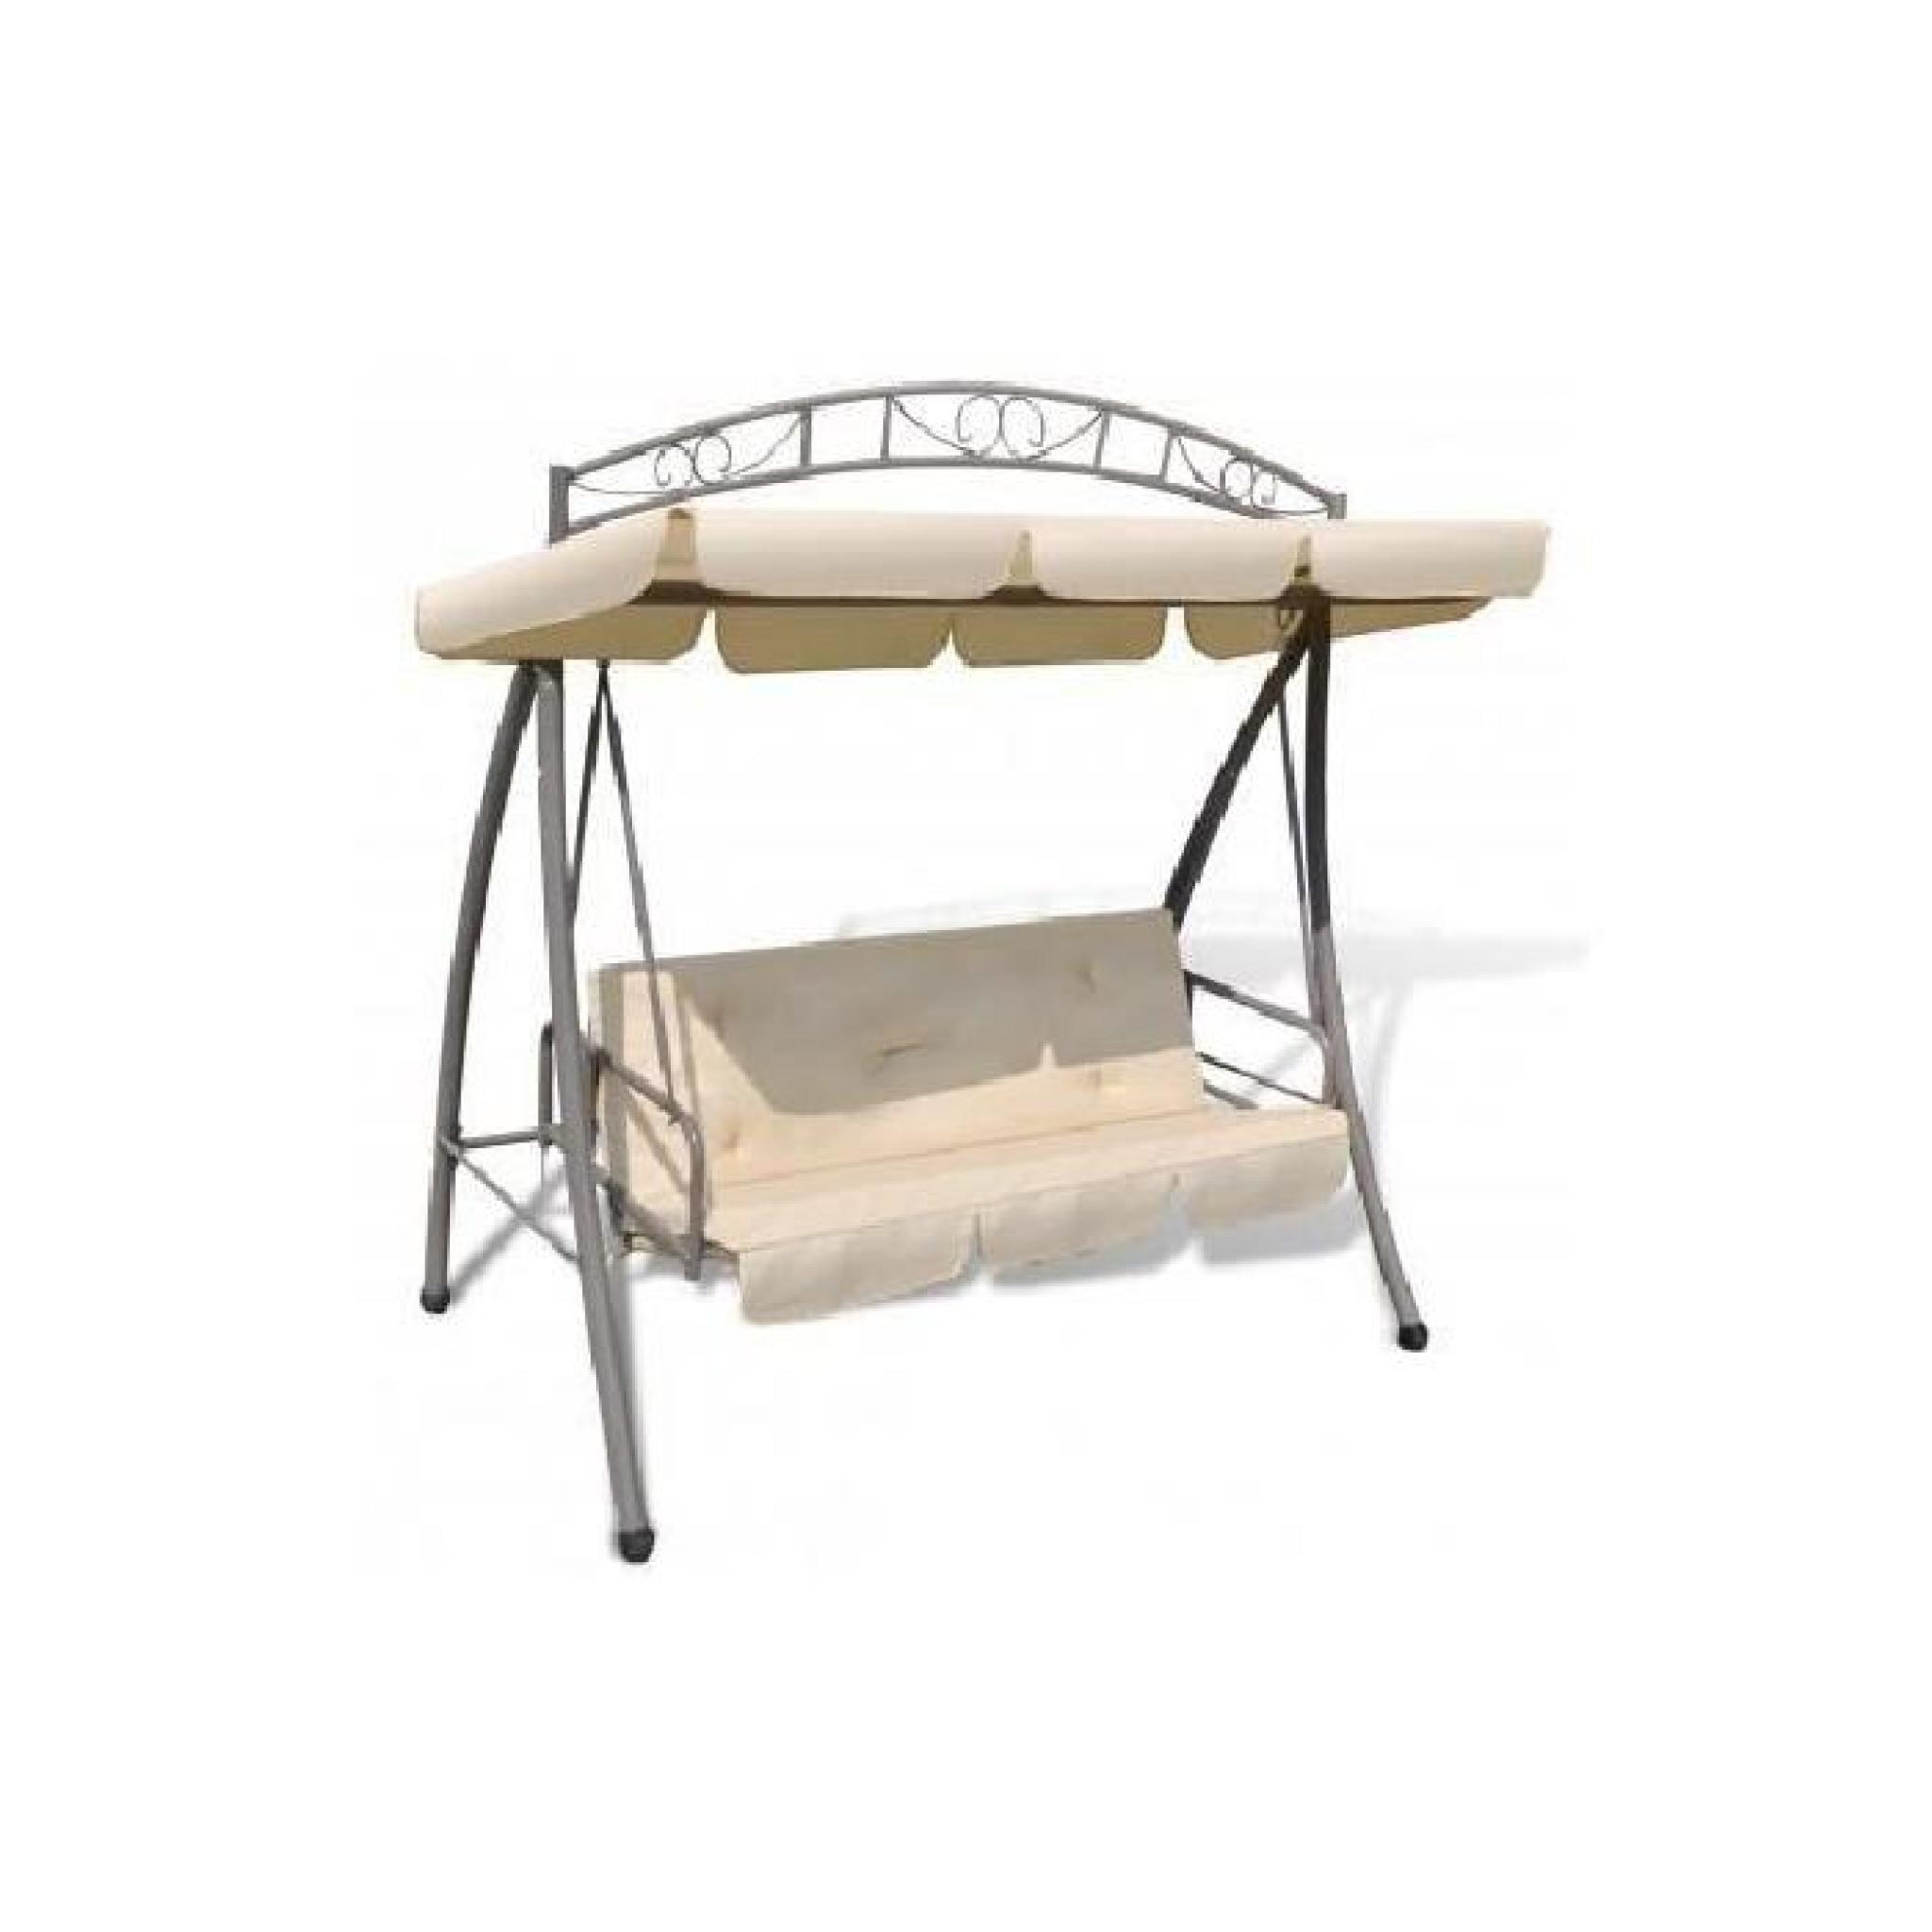 Balancelle balancoire hamac banc fauteuil de jardin bois de pin 2 places  charge max. 300kg